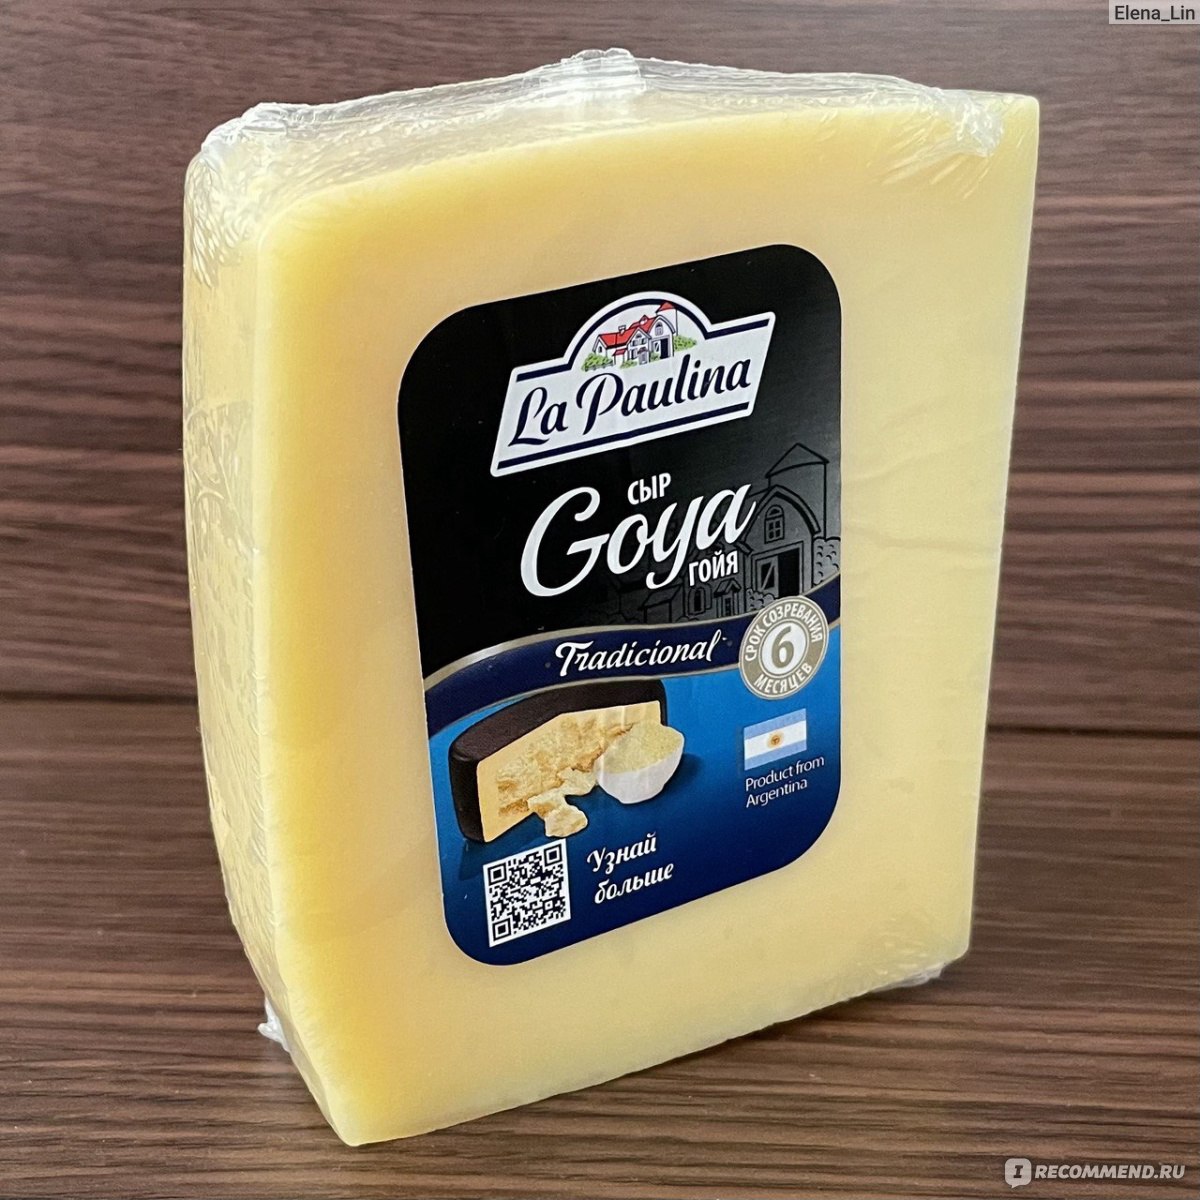 Сыр понравился